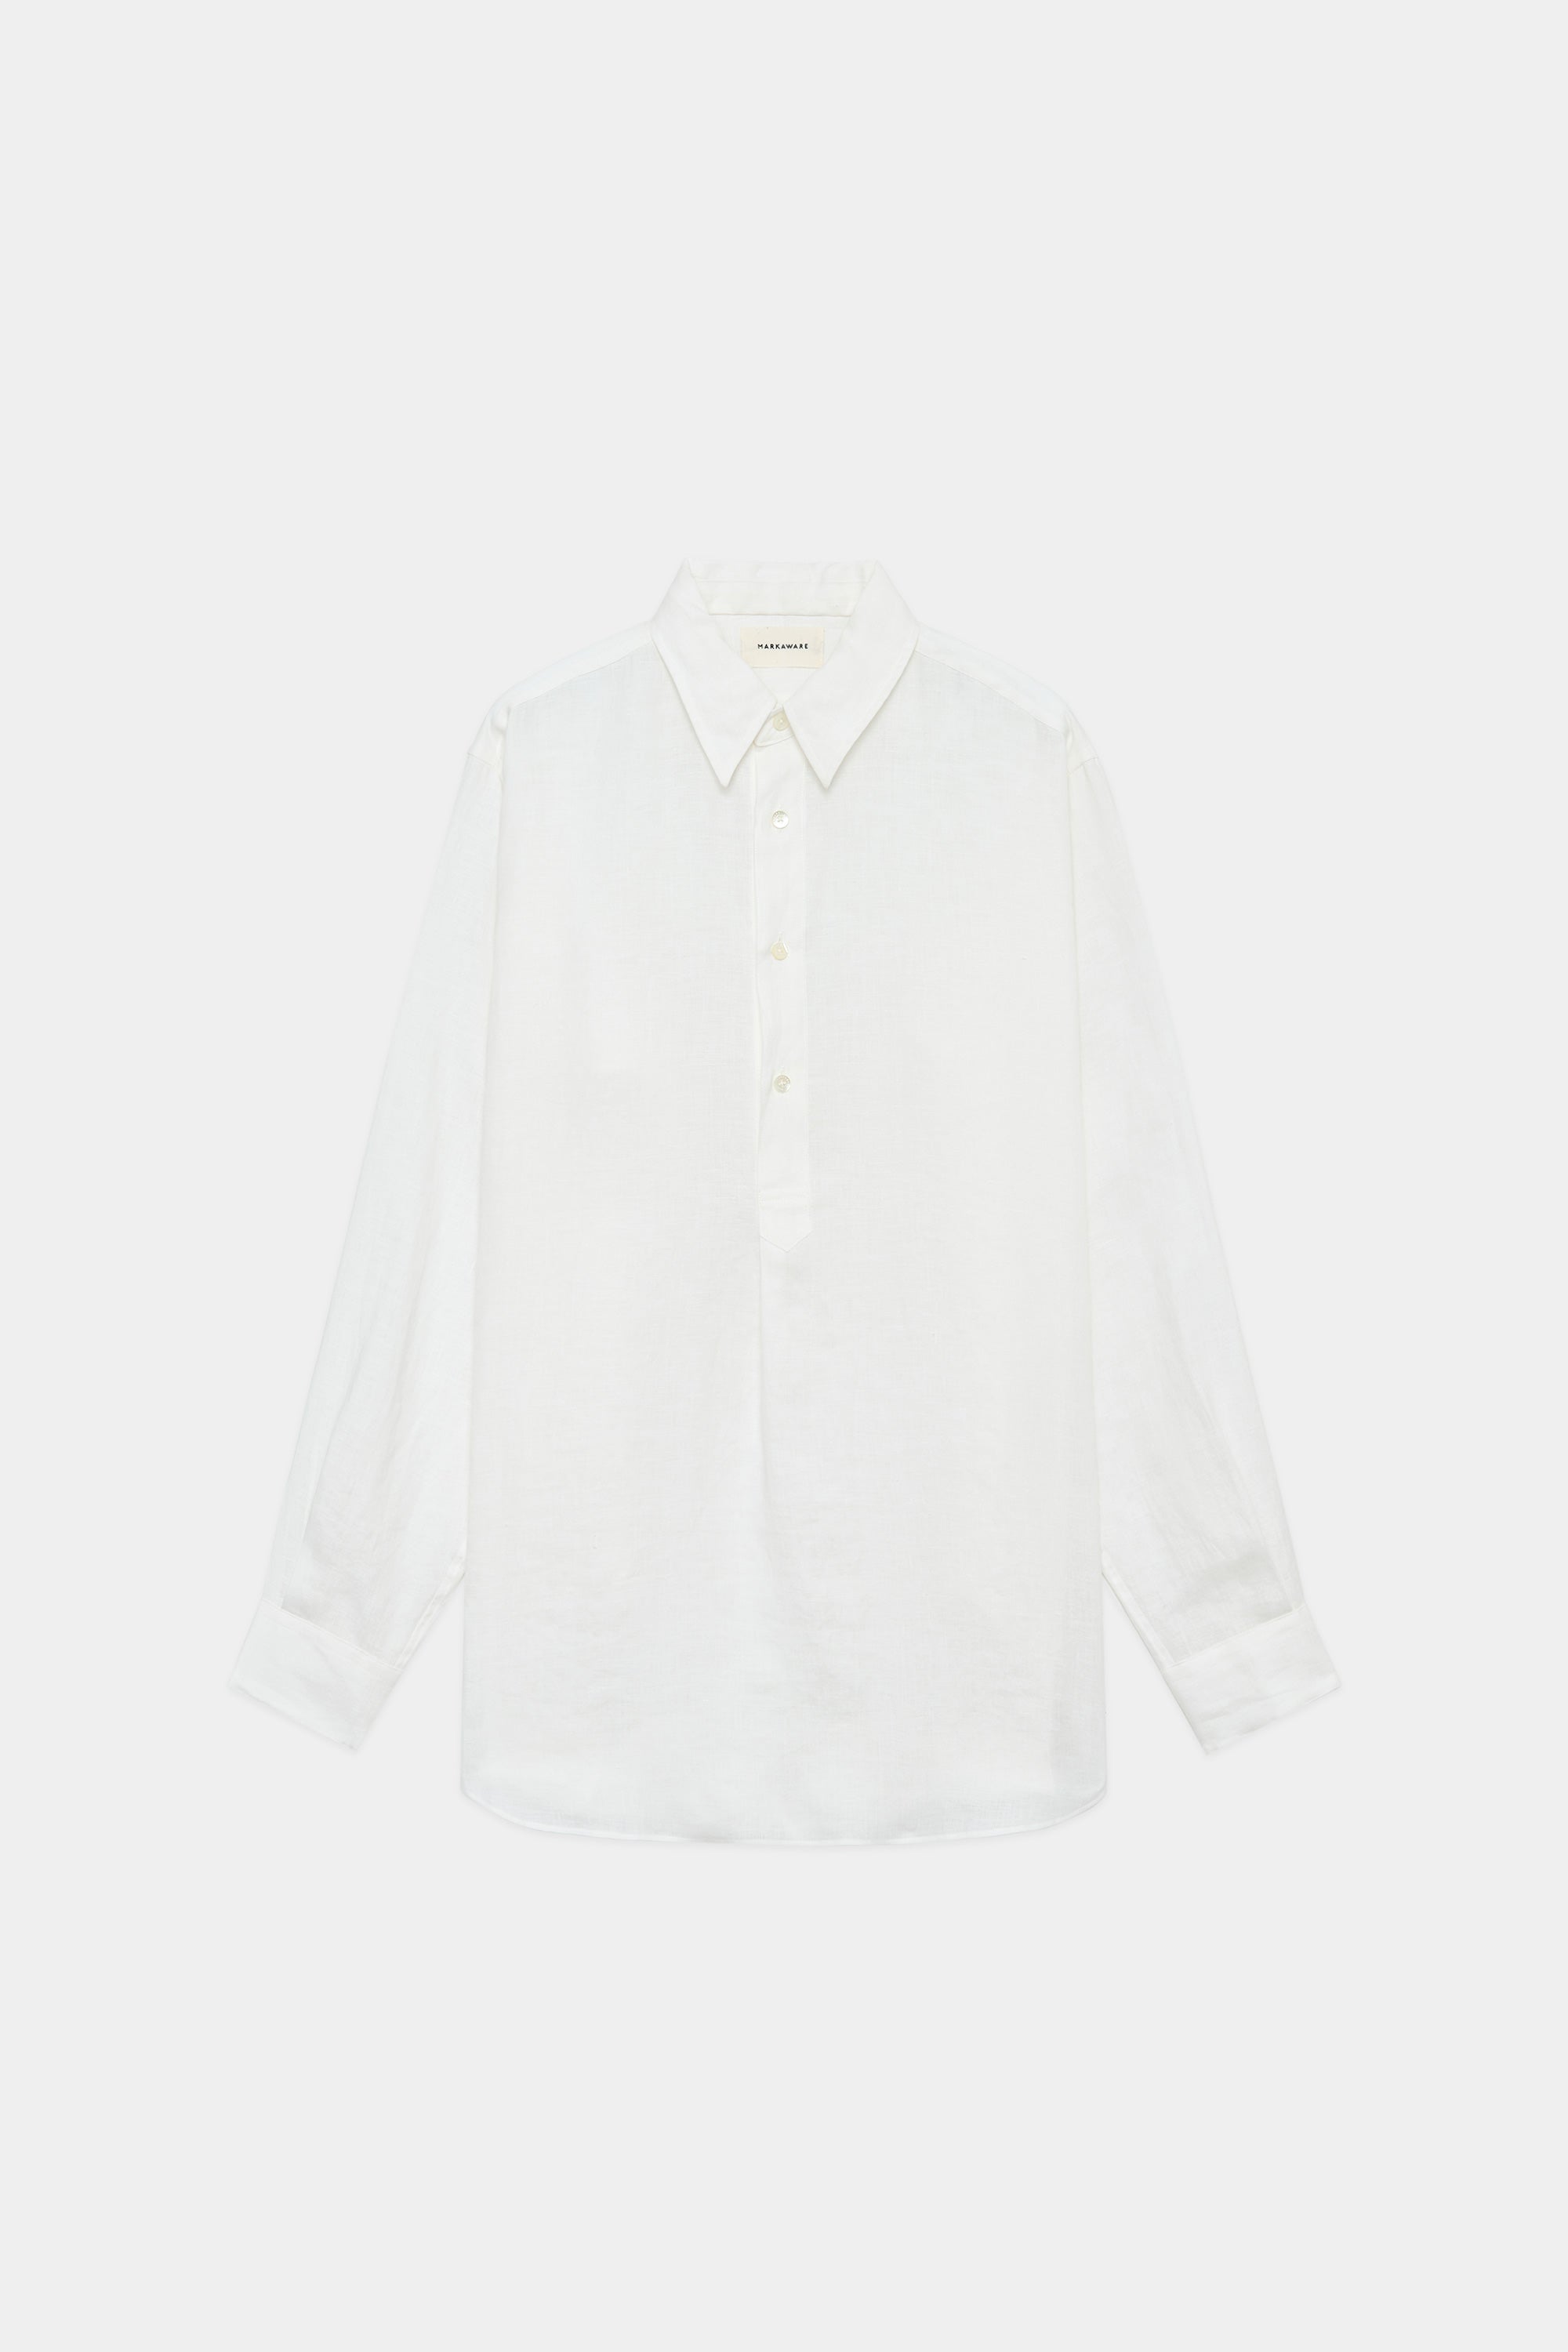 ヘンプ細布 / ダブルカラーロングシャツ, White